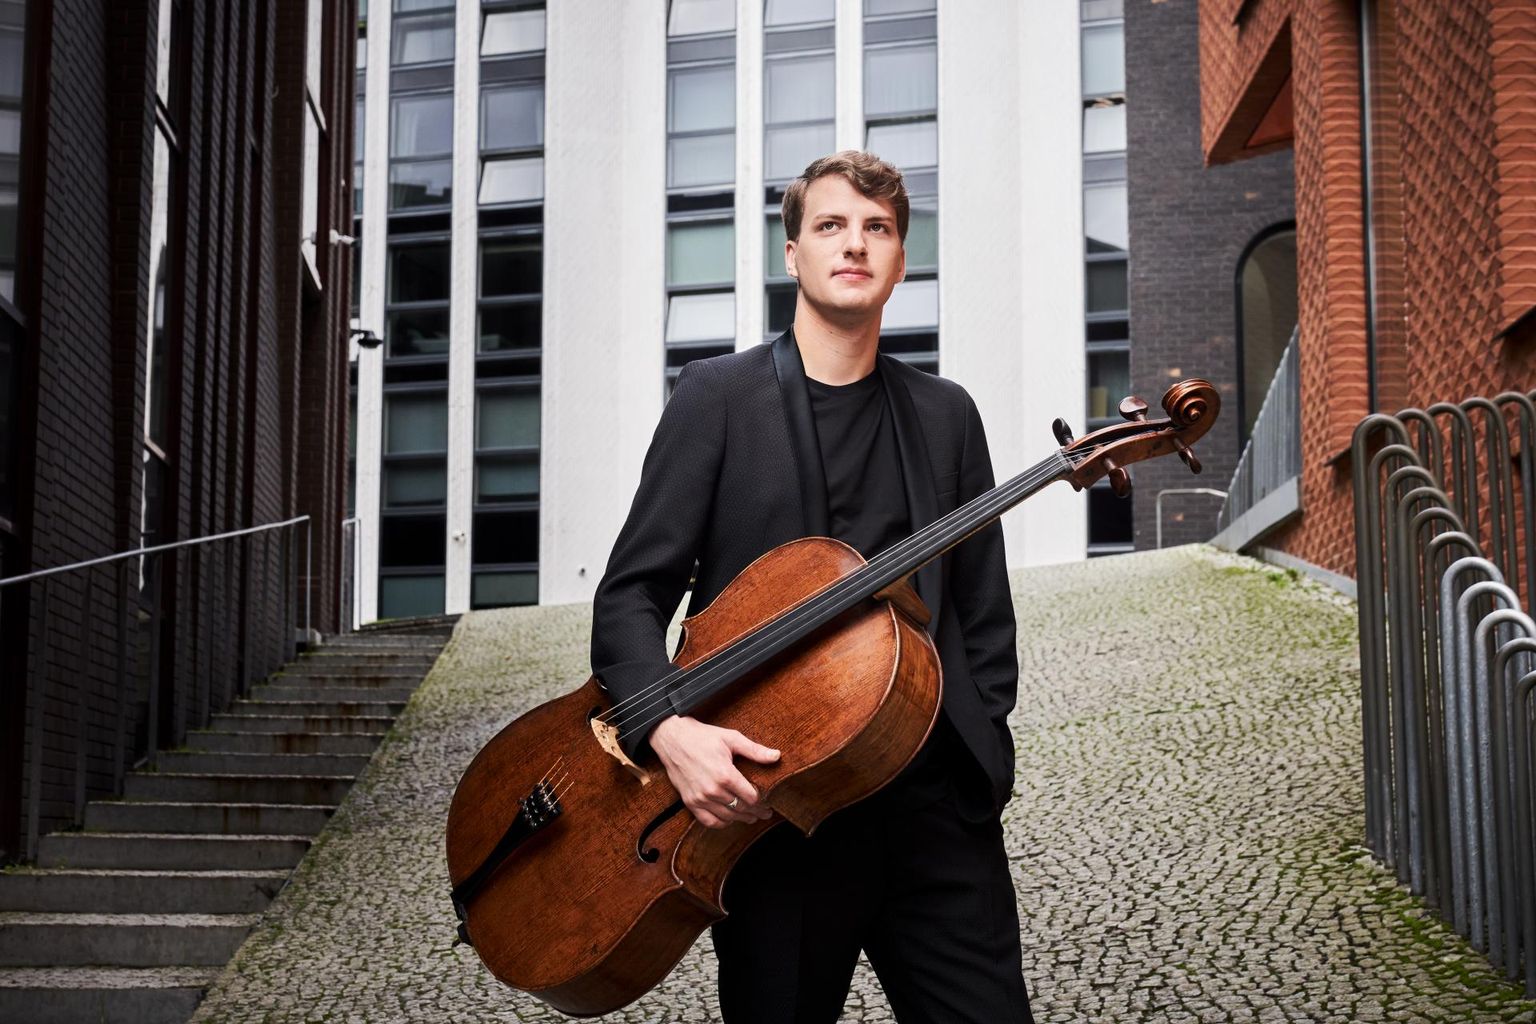 Pühapäeval anti Tallinna kammermuusika festivali viimasel kontserdil Jaani kirikus üle Pille Lille Muusikute Fondi Noore muusiku preemia, mille pälvis tšellist Marcel Johannes Kits.